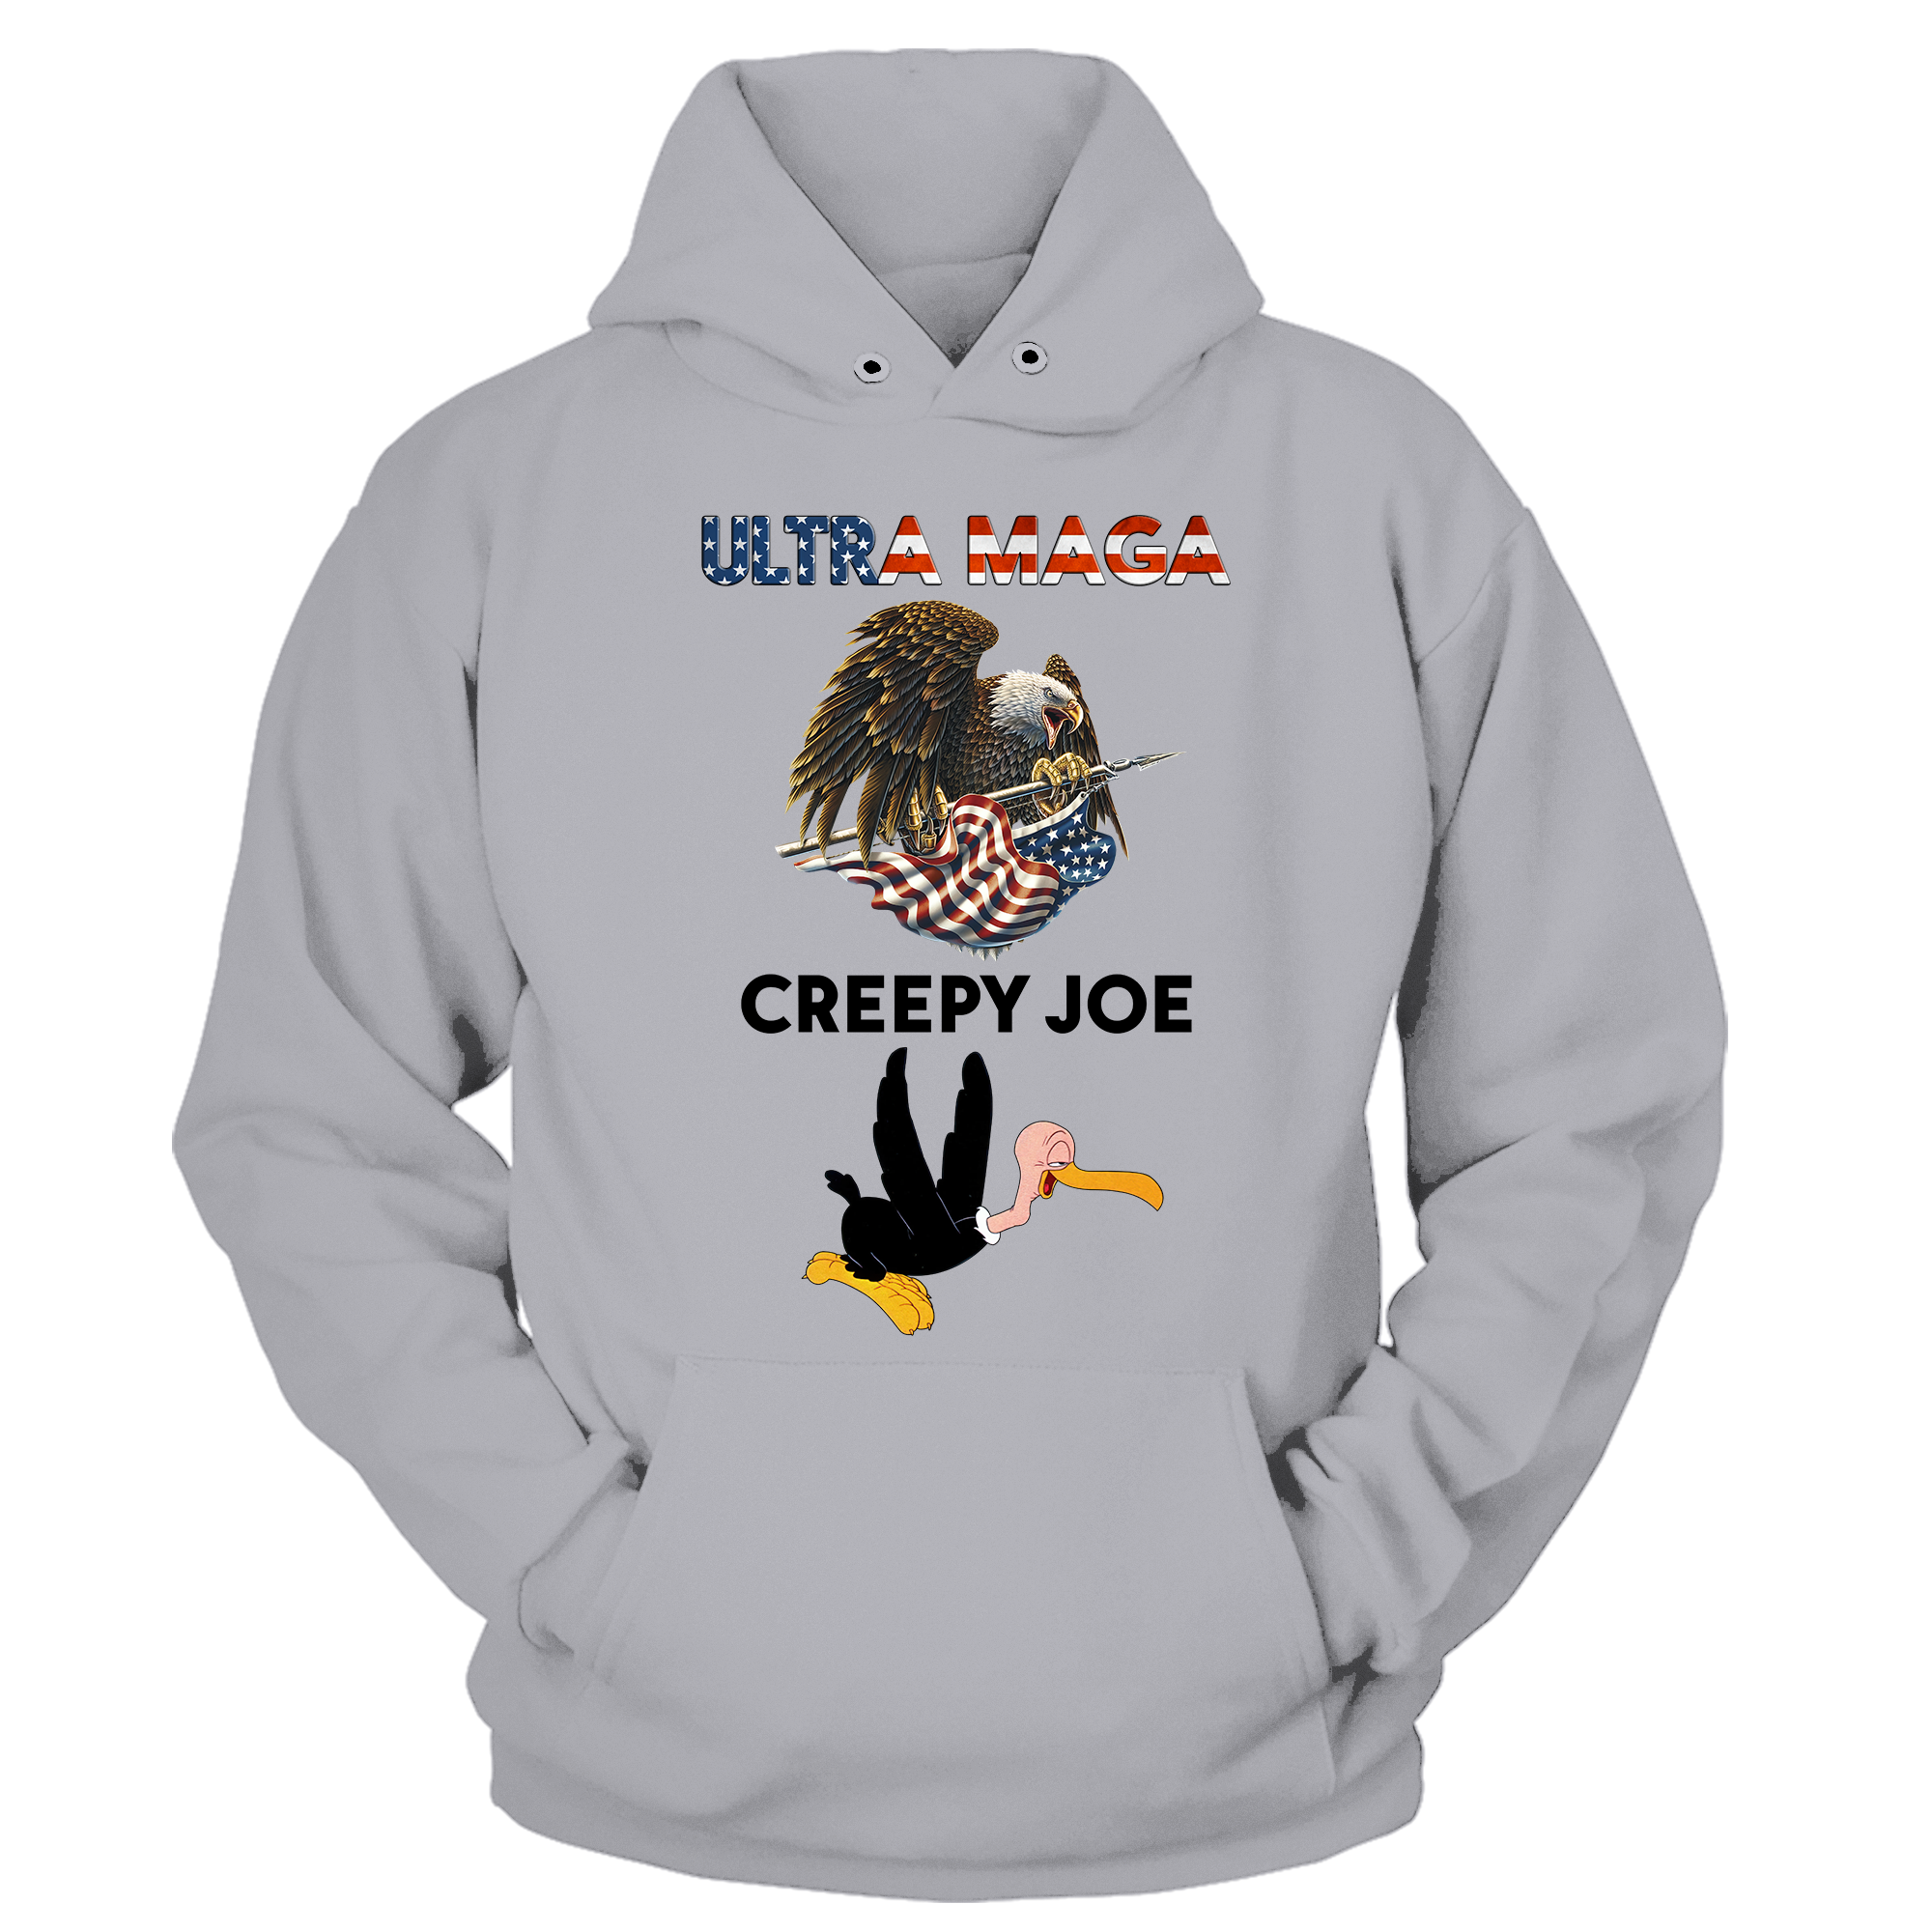 Ultra Maga Creepy Joe T-shirt - GB56